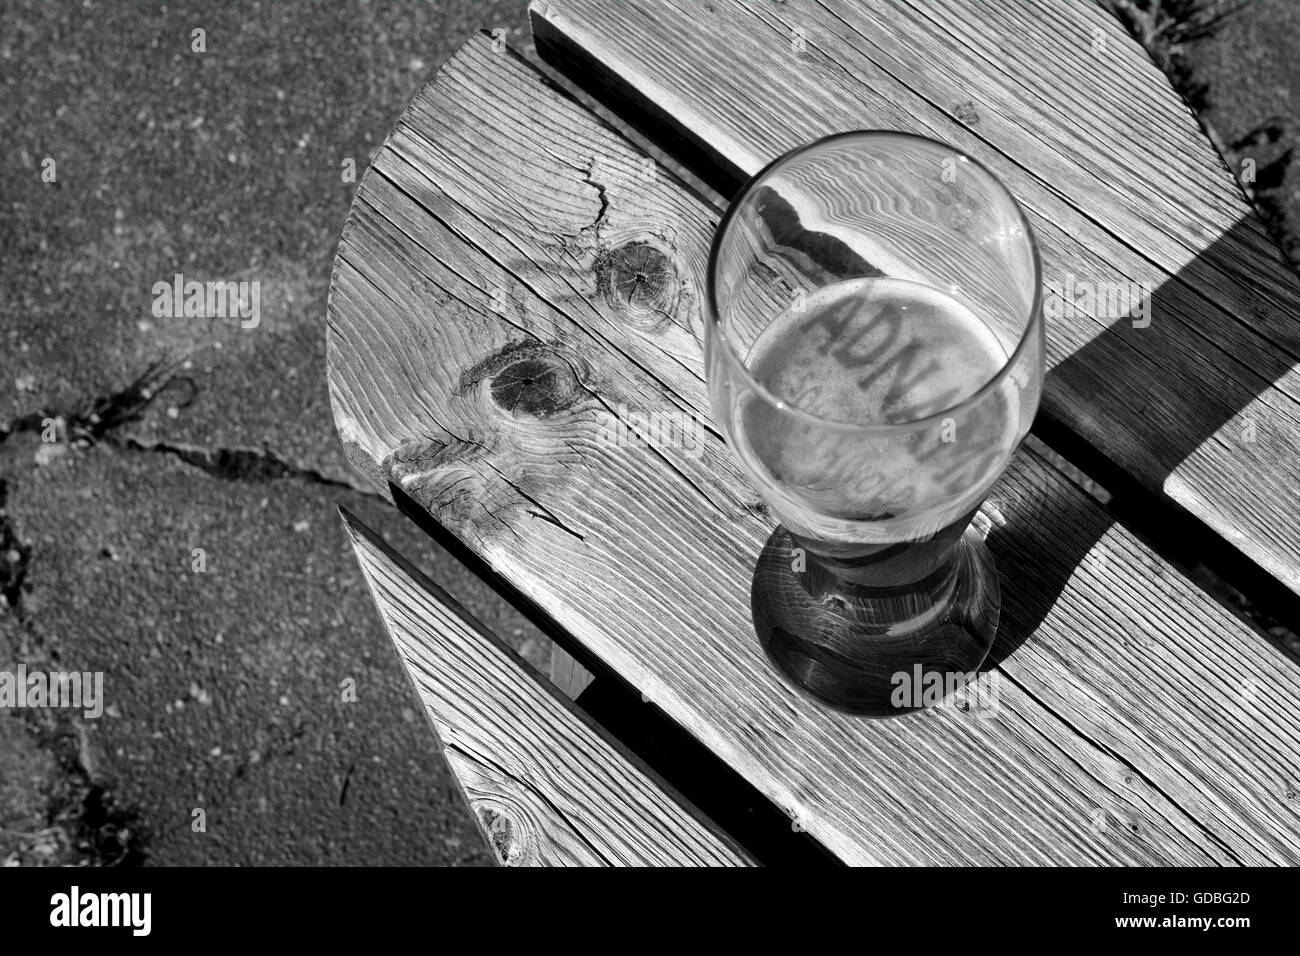 Pinte de bière Adnams avec une ombre à partir de la vitre de l'autre côté de la bière Banque D'Images